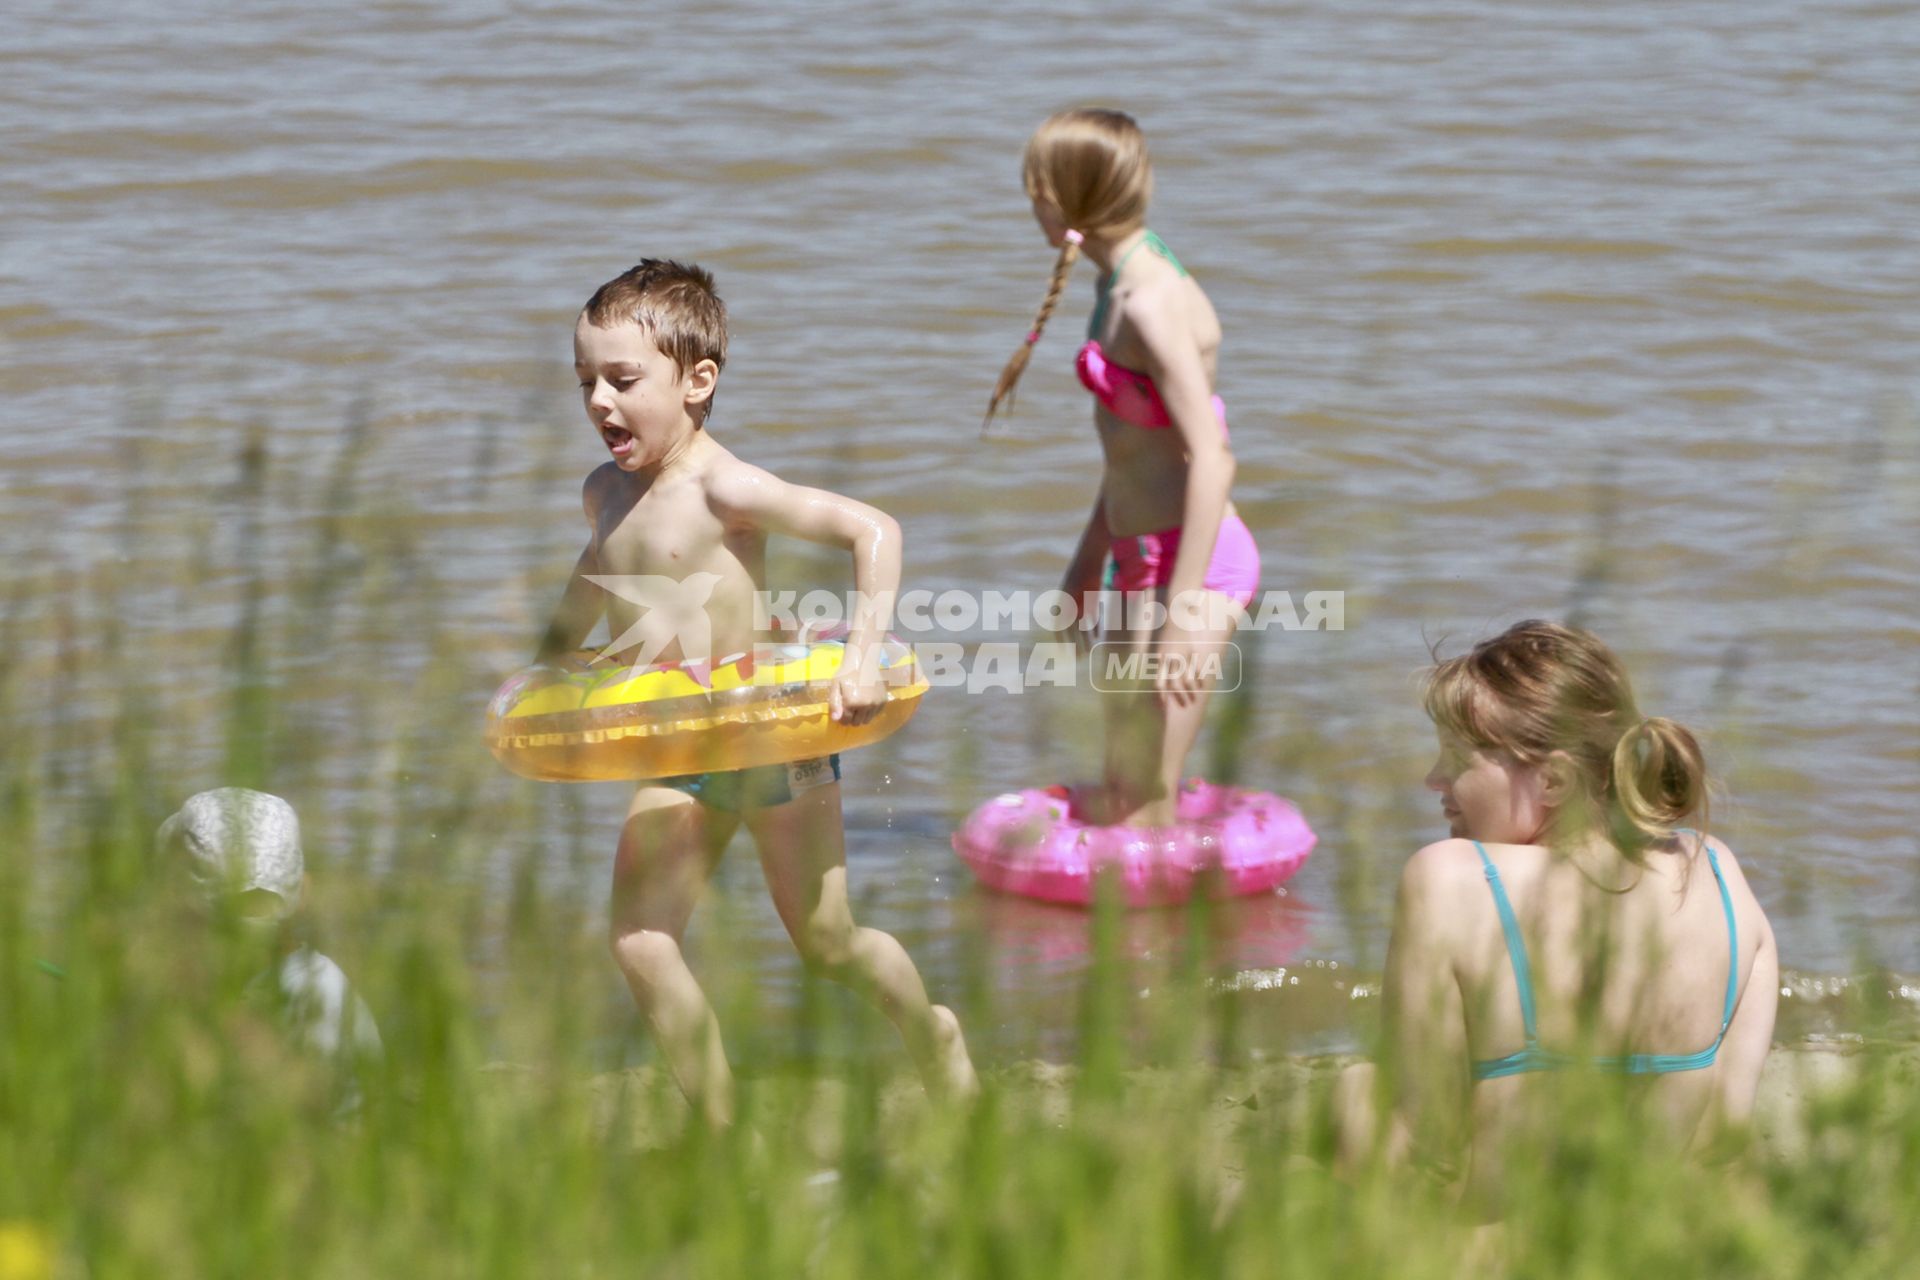 Барнаул. Дети купаются в реке.